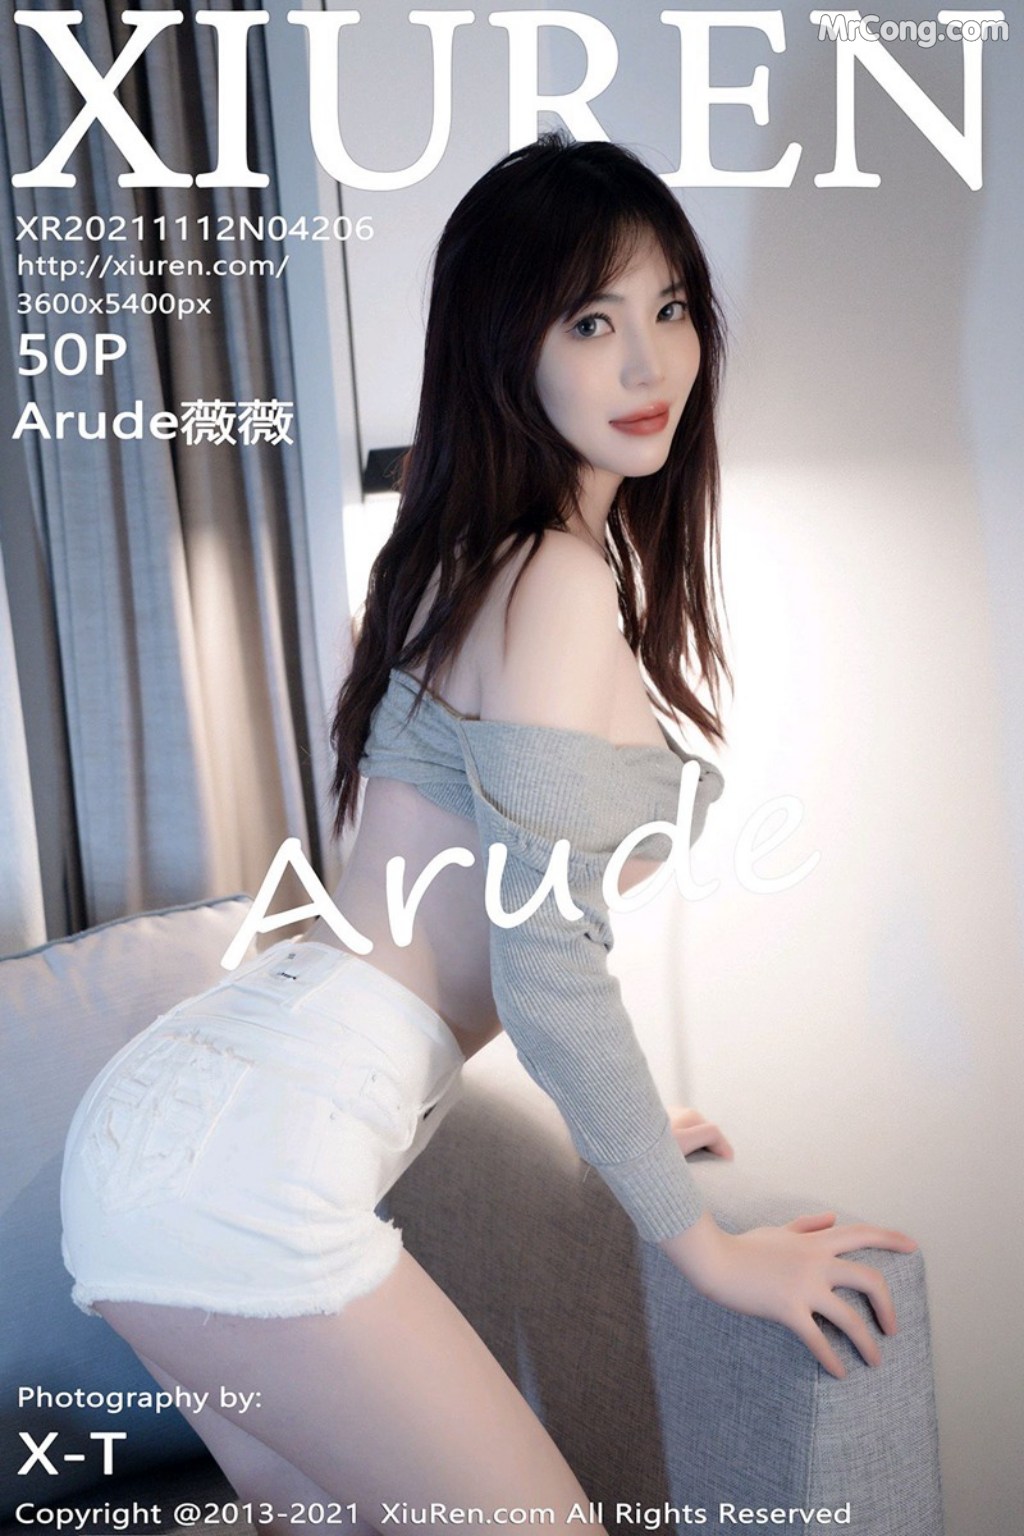 XIUREN No.4206: Arude薇薇 (51 photos) photo 3-10